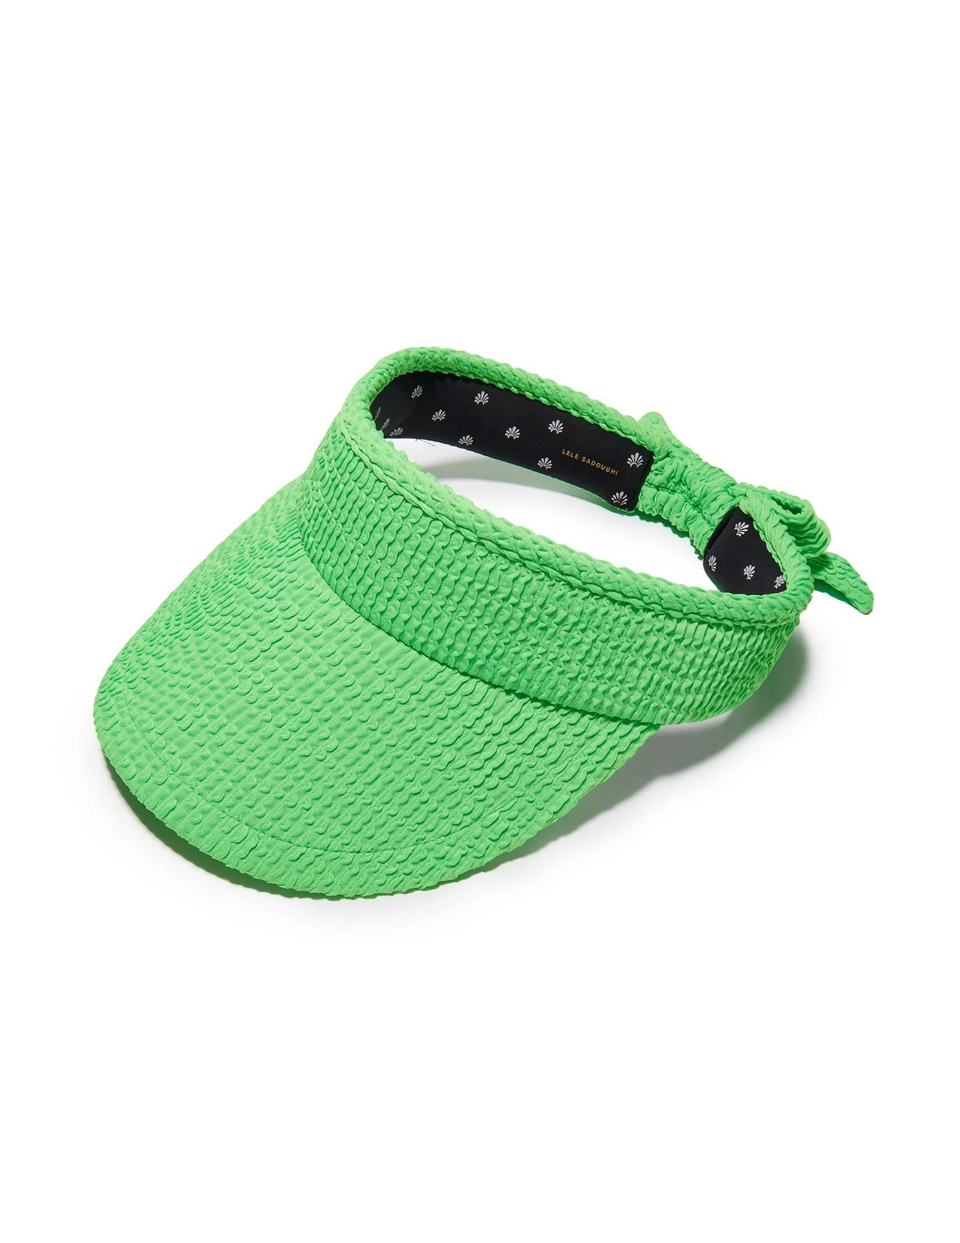 Lele Sadoughi Swimmer Bow Tie Visor Parakeet, hats, summer hats, green hats